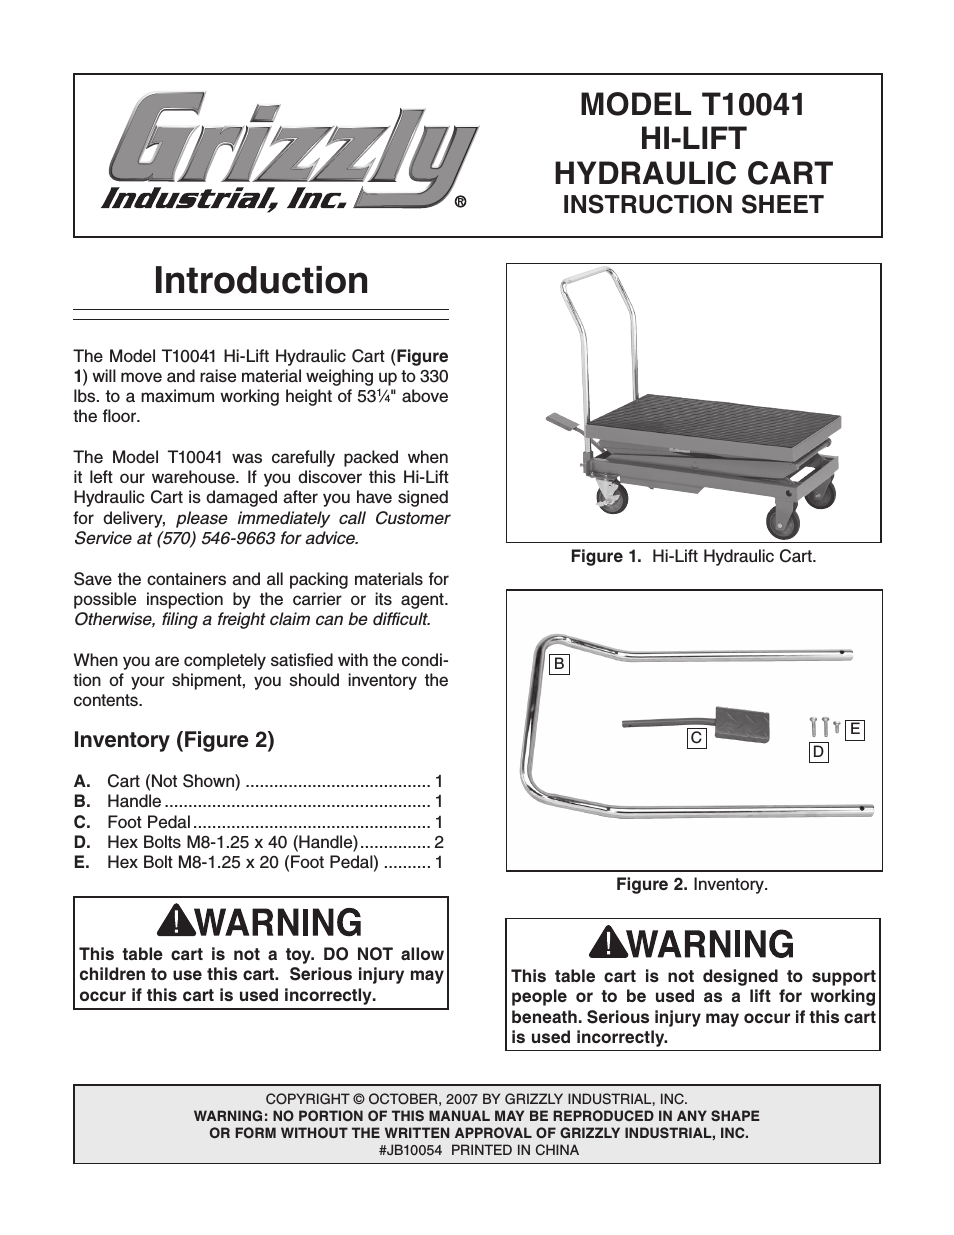 Hi-Lift Hydraulic Cart T10041